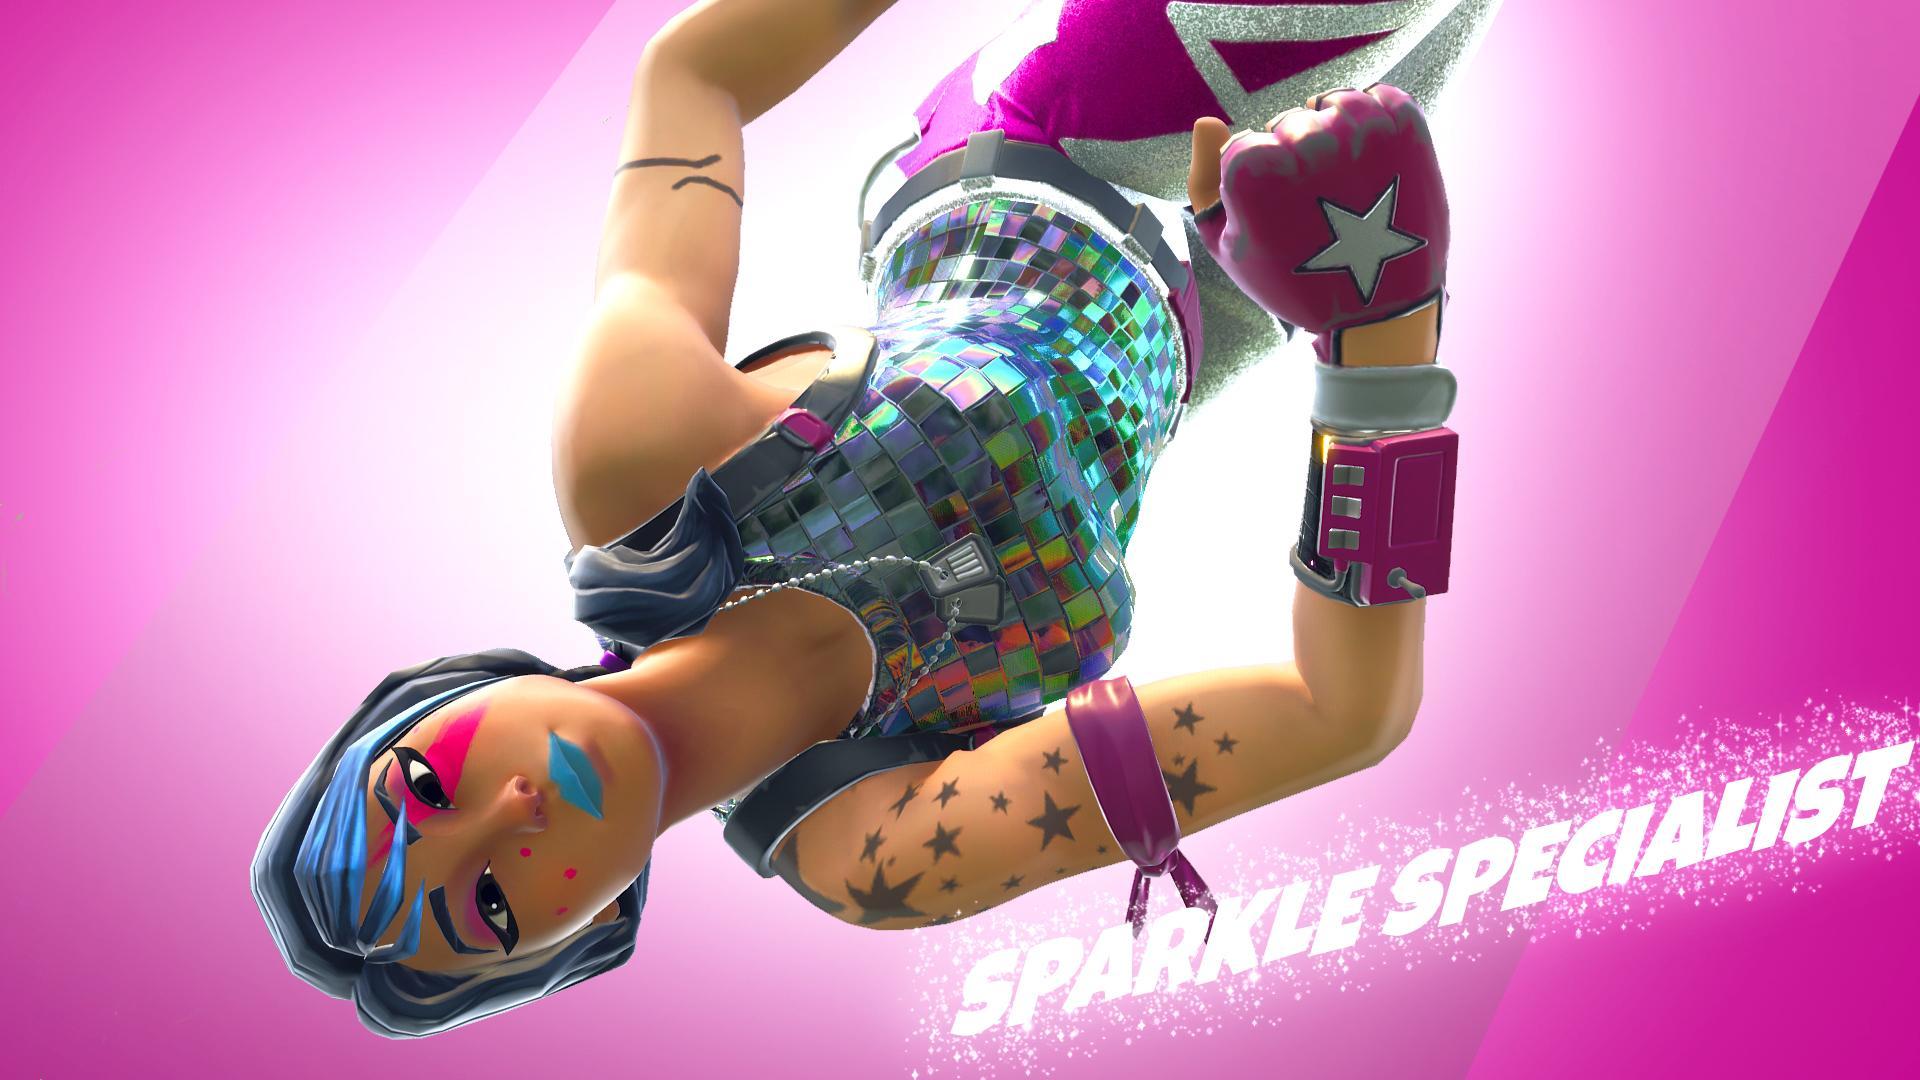 Fortnite X Sparkle Supreme Season 10 Battle Pass Skin Outfit 8K Wallpaper  #352